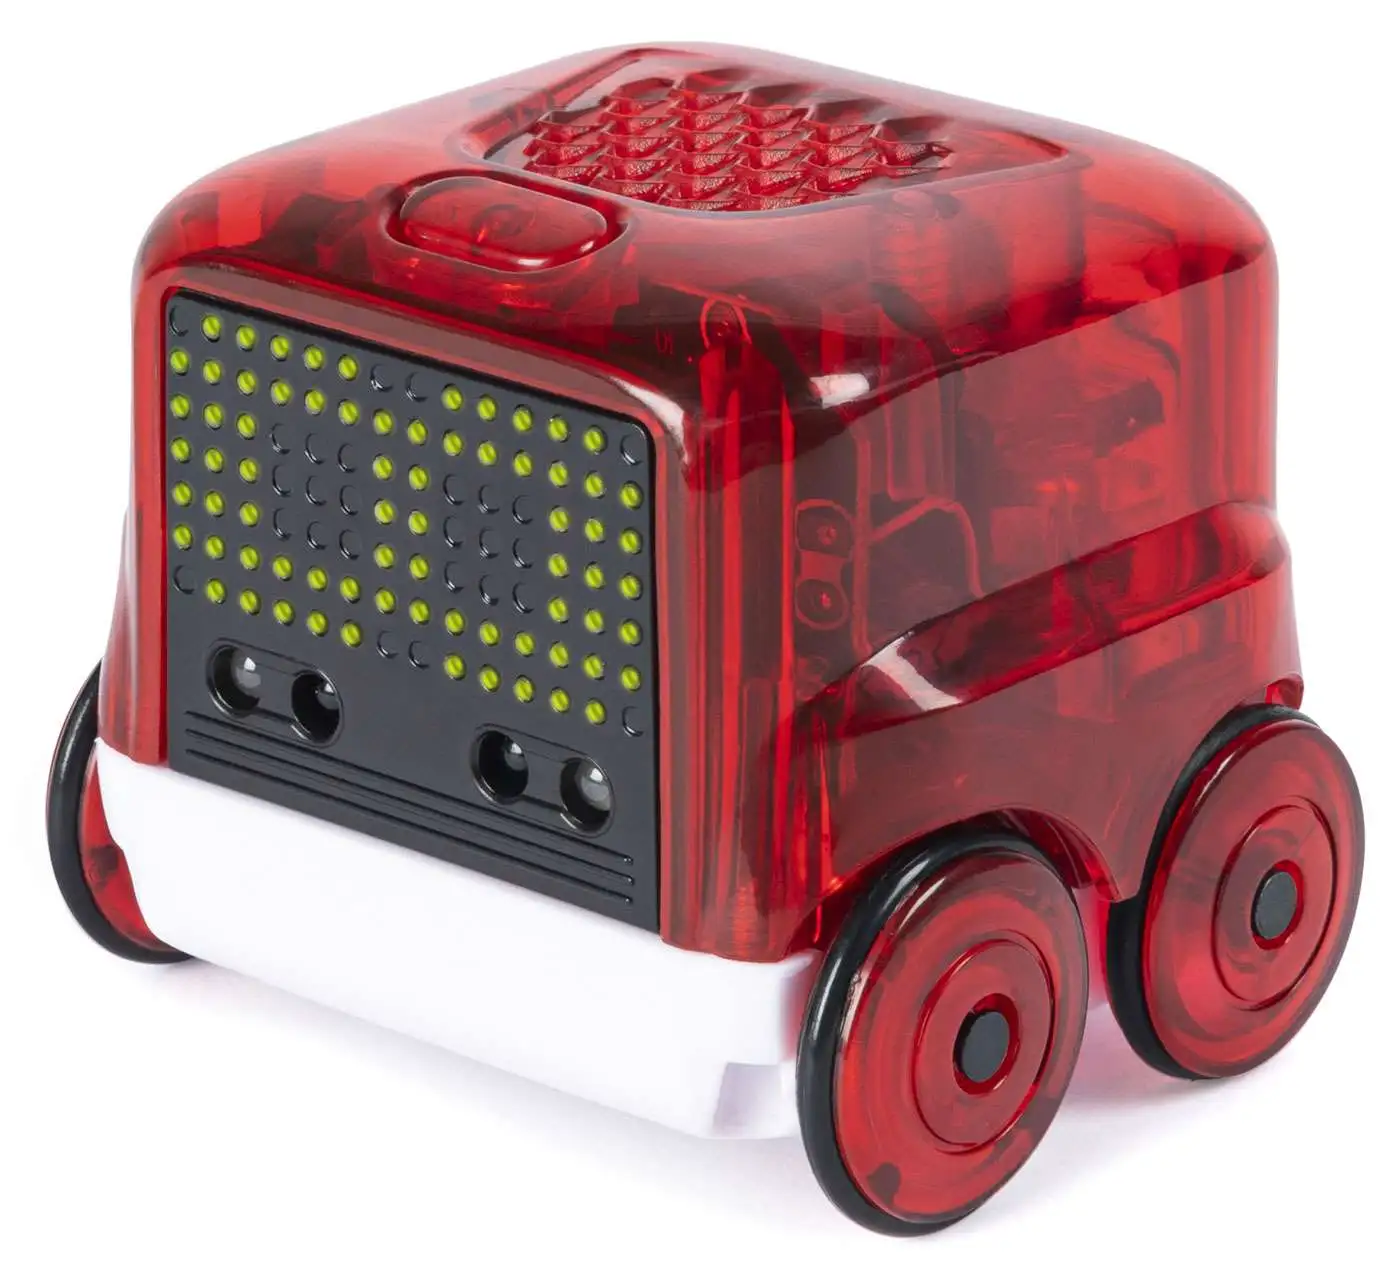 Novie Novie Interactive Robot Red Spin Master - ToyWiz